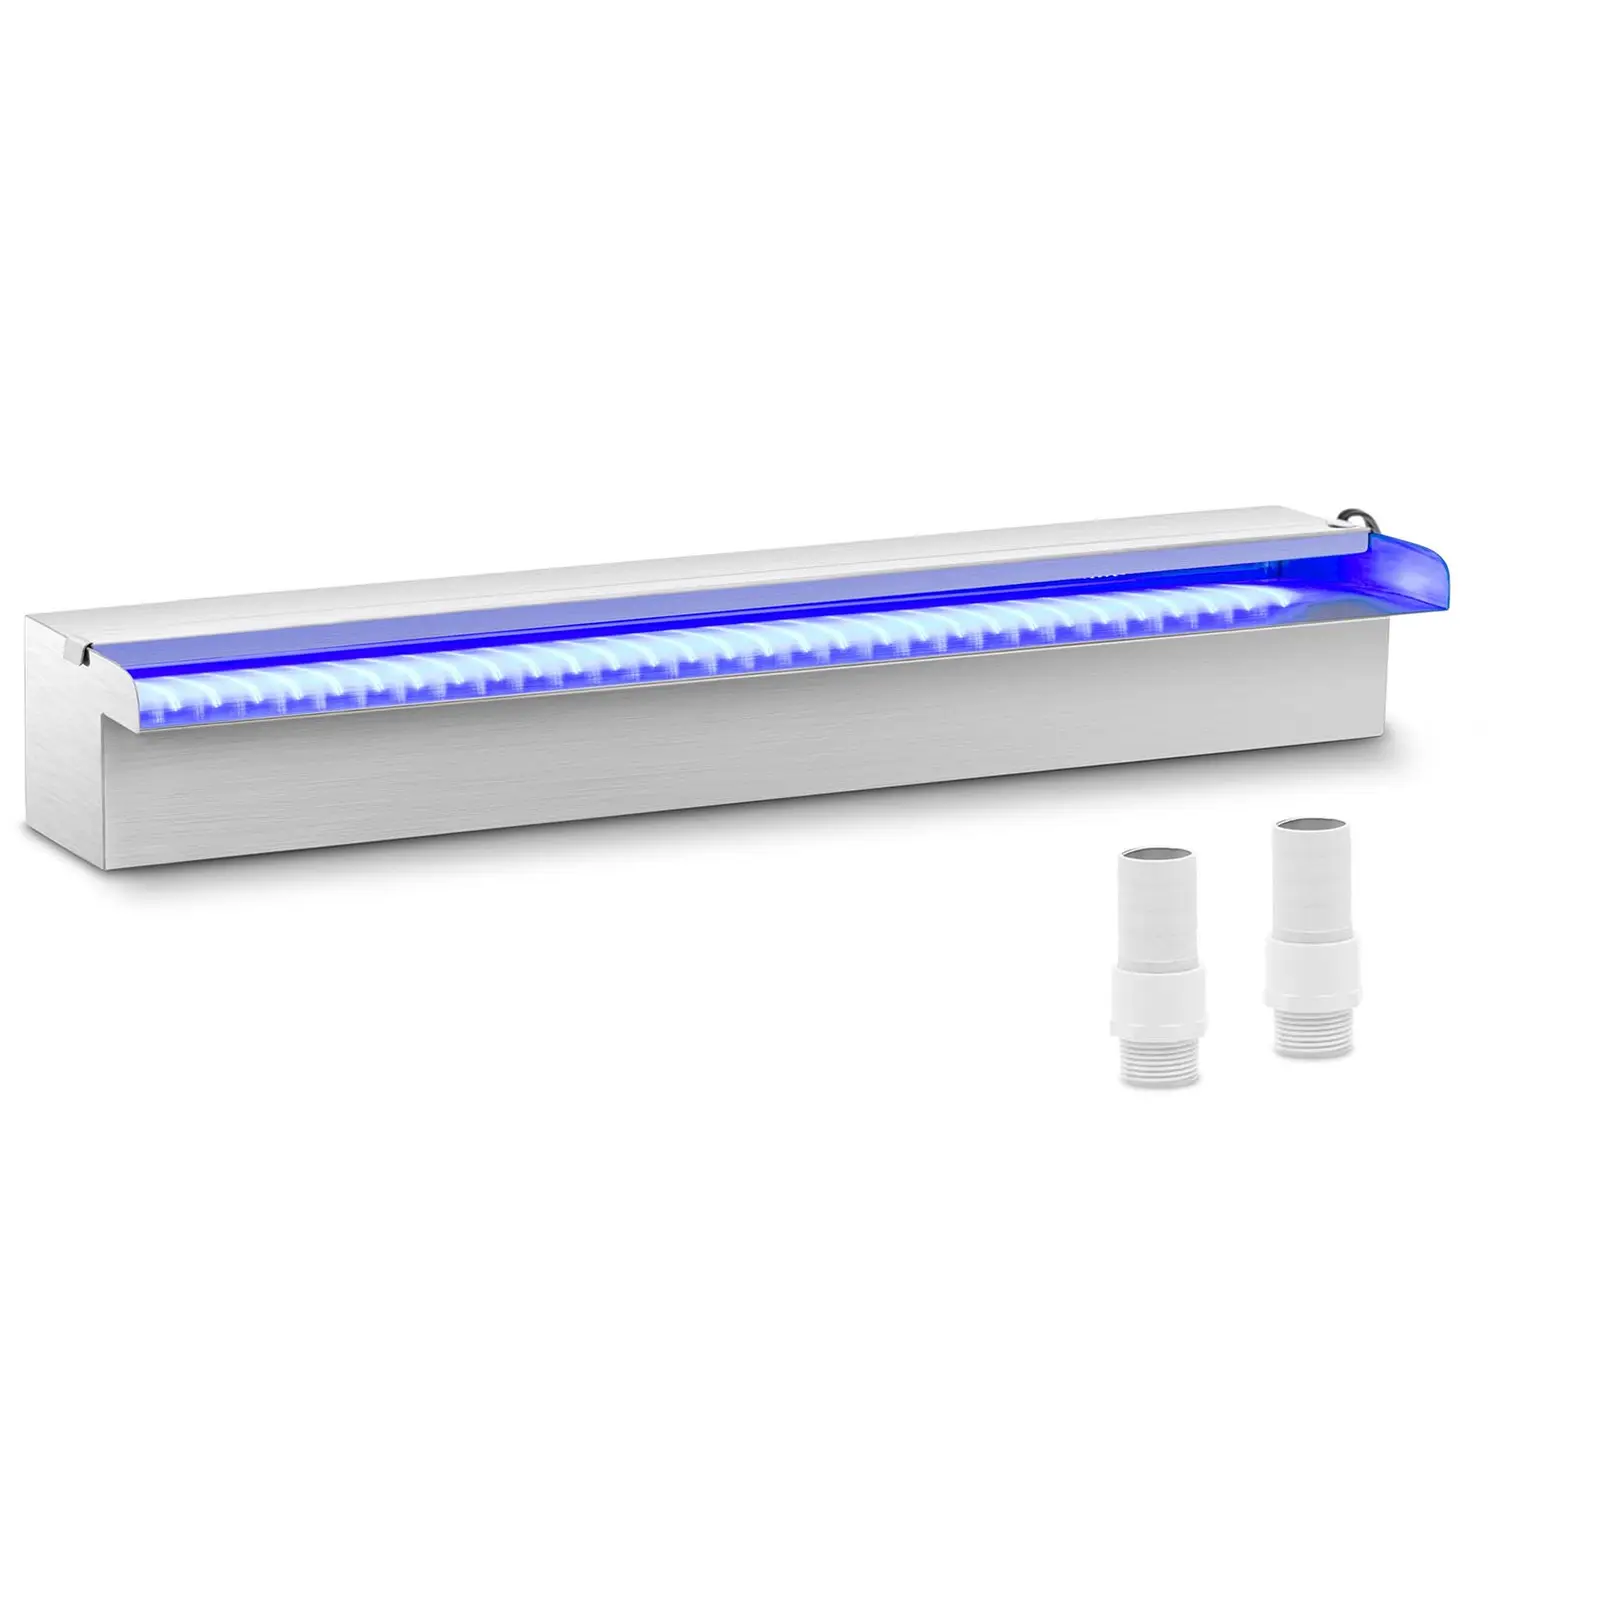 Medence szökőkút - 60 cm - LED világítás - kék/fehér